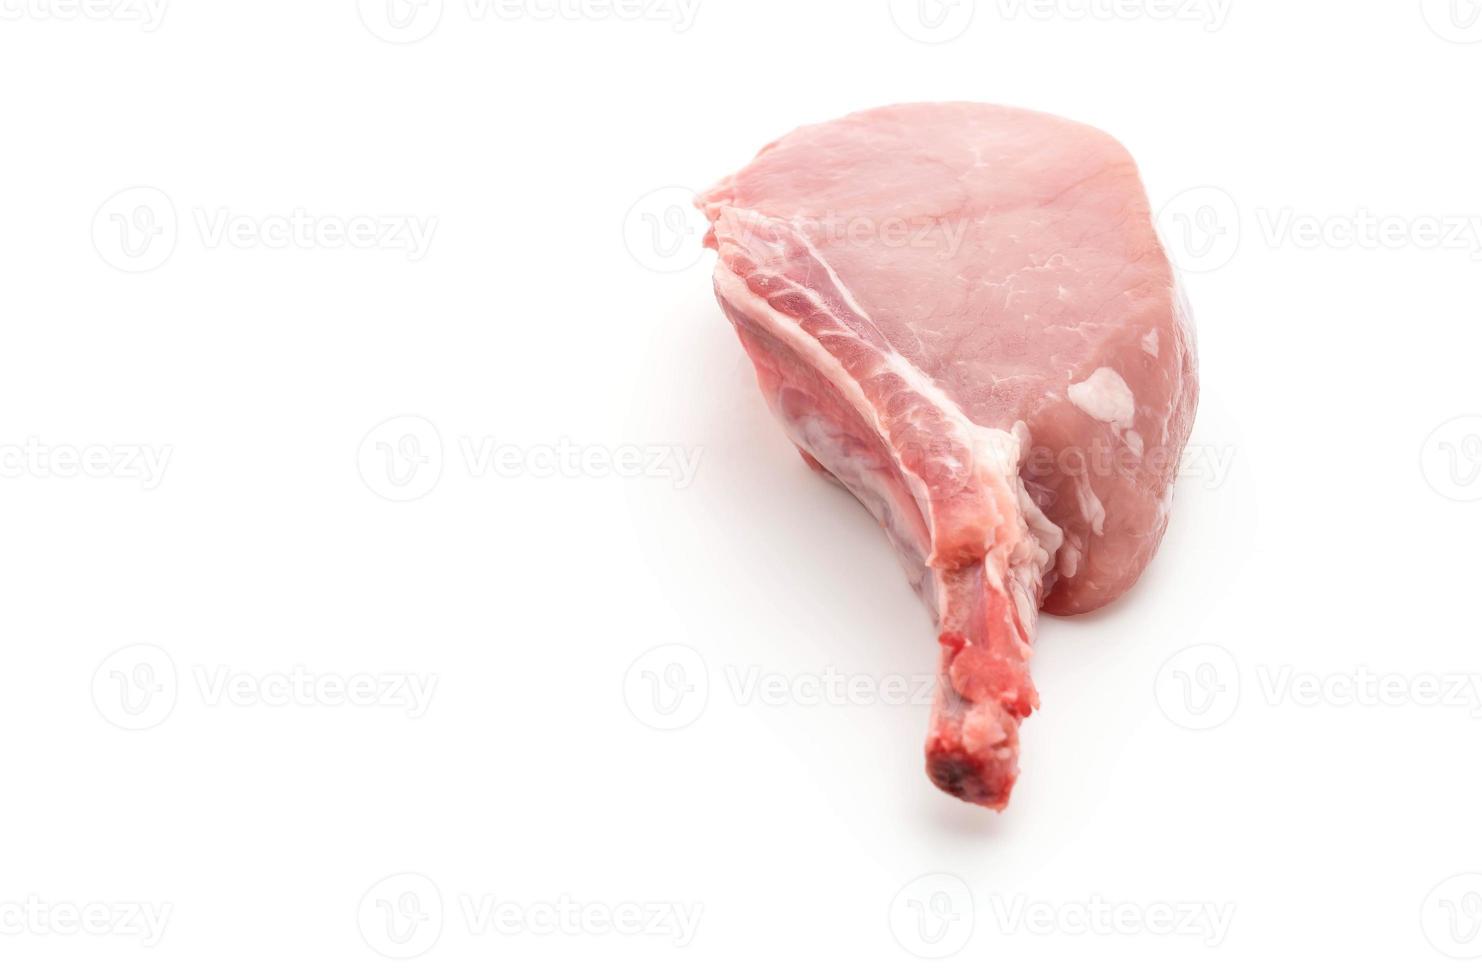 braciola di maiale fresca su sfondo bianco foto